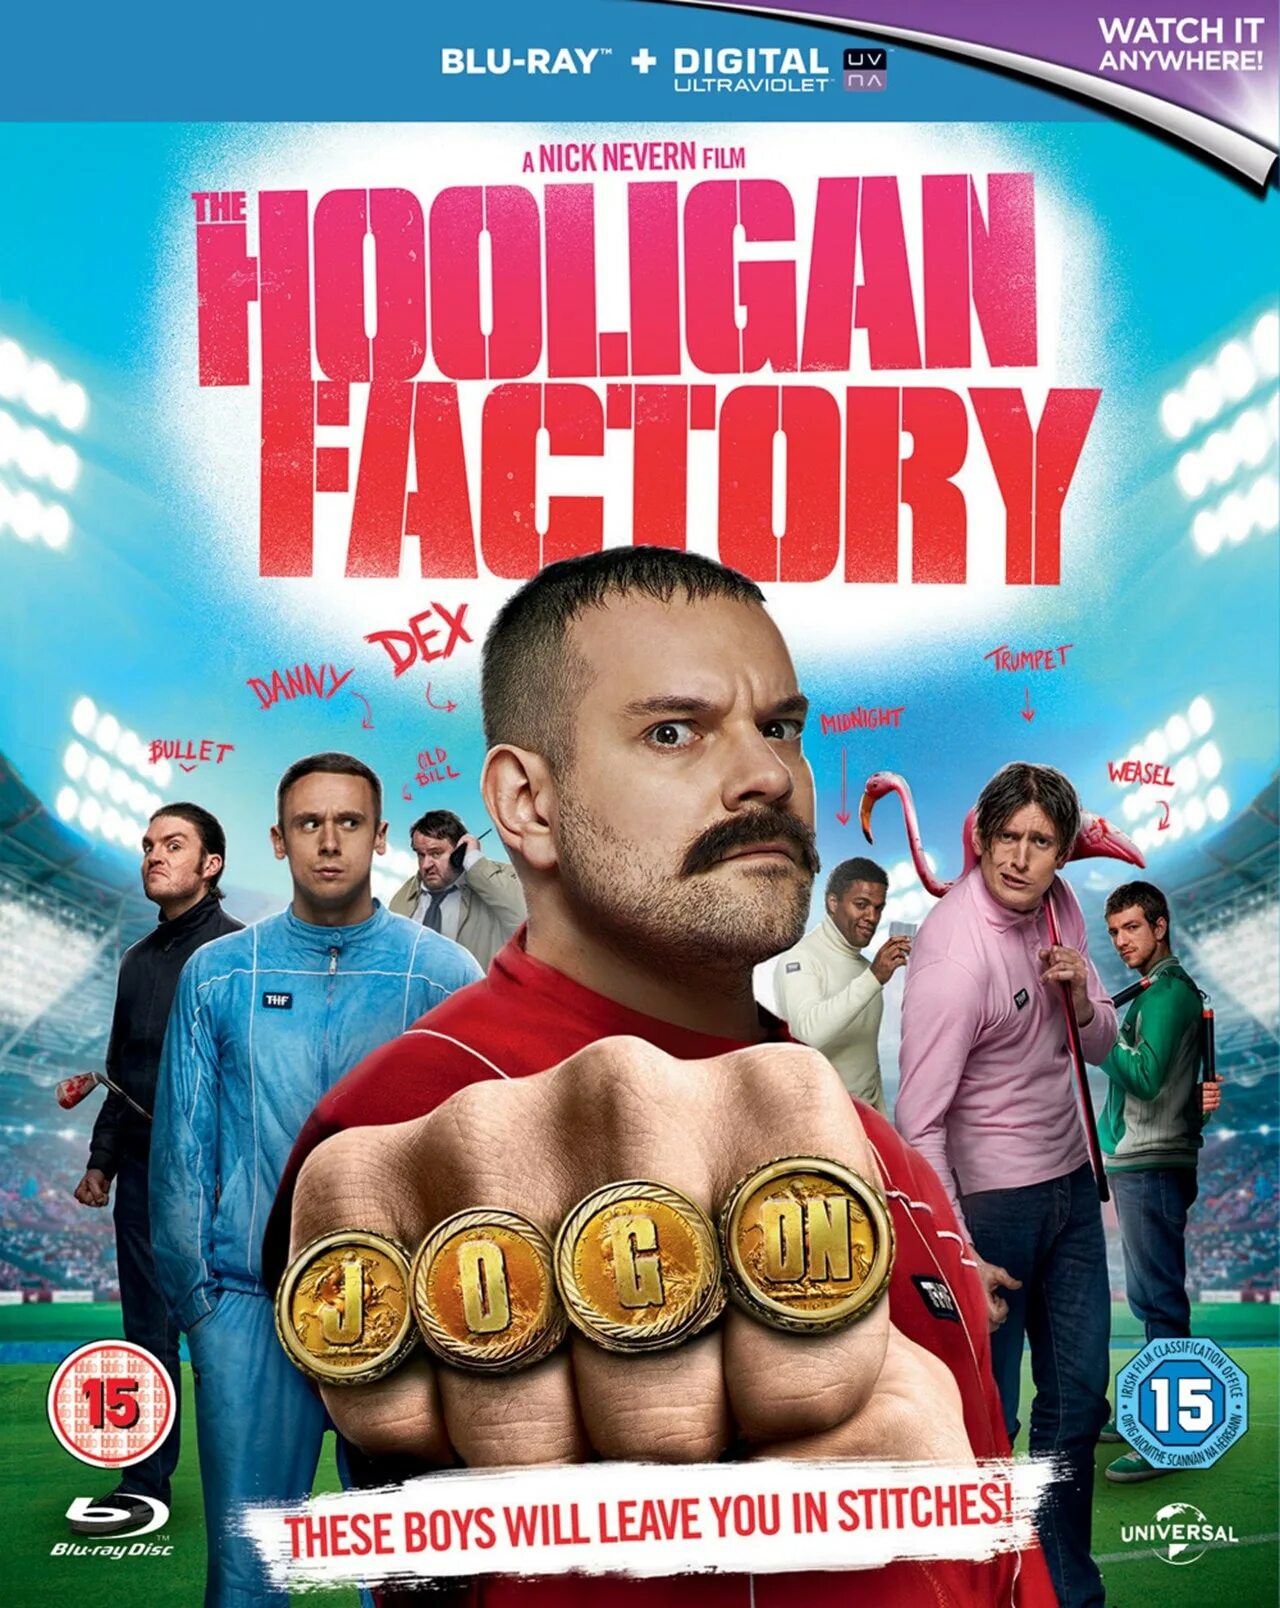 13 хулиганов. Хулиганы the Hooligan Factory. Хулиган (Blu-ray).